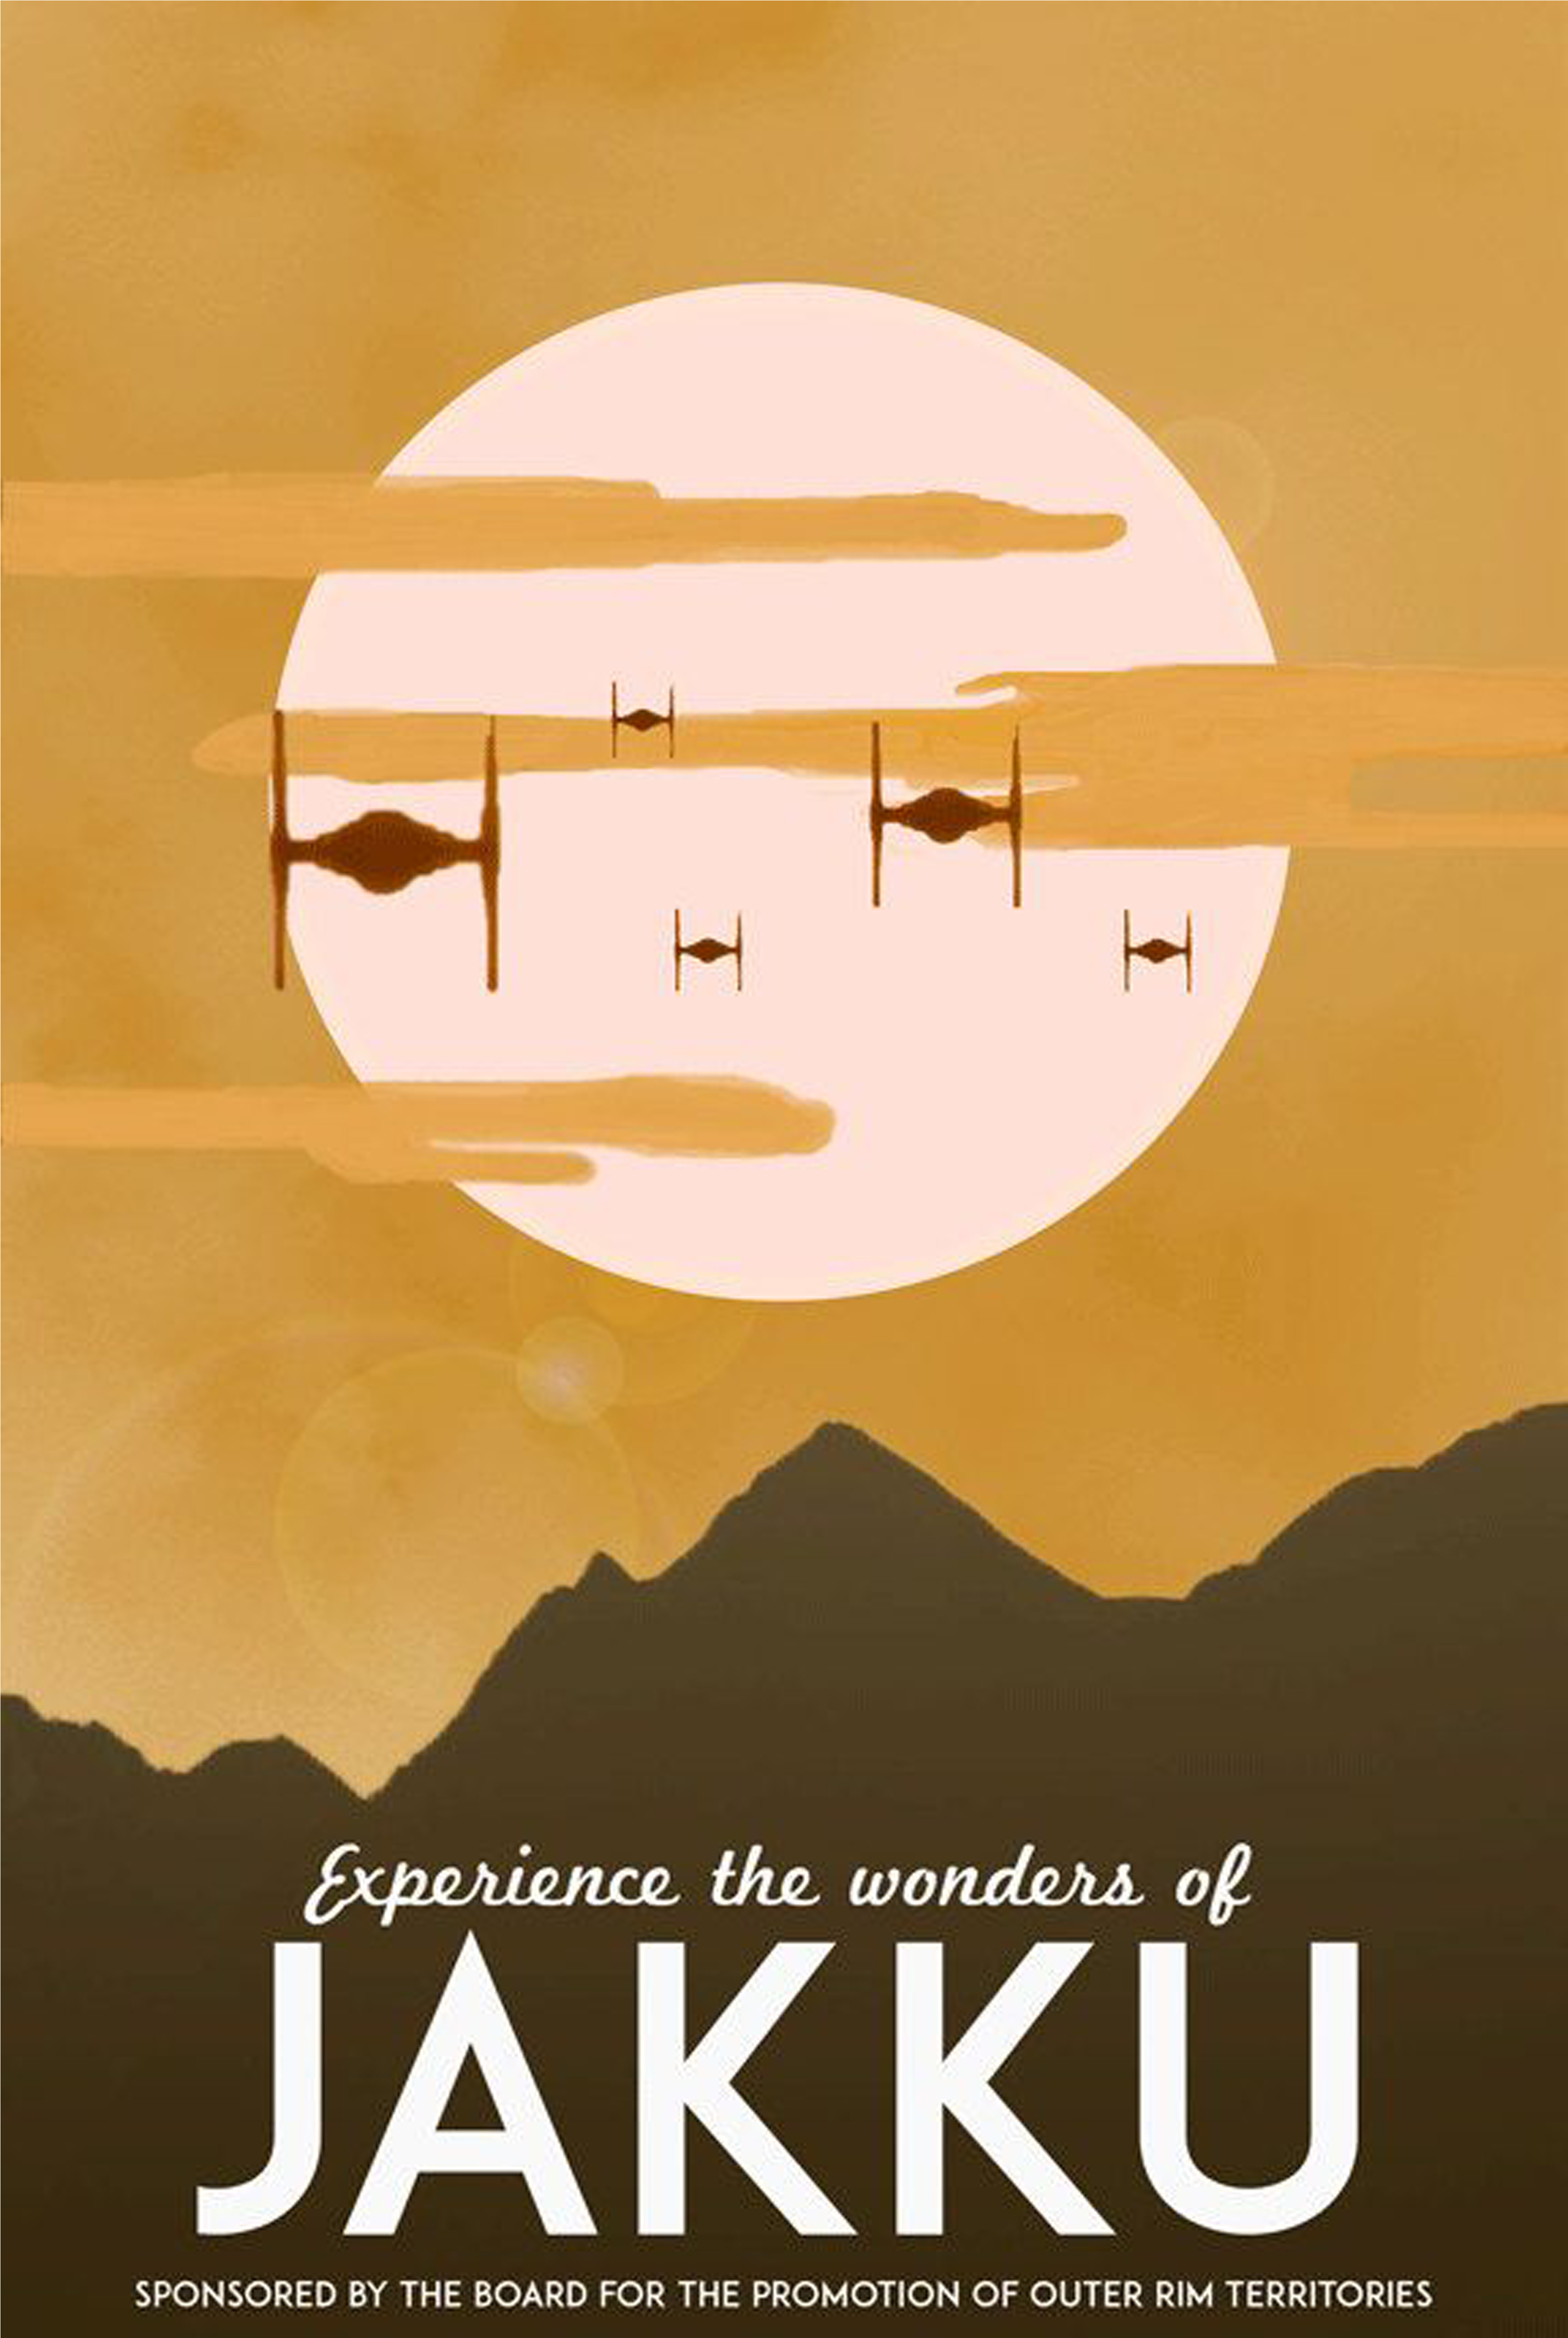 Star Wars Jakku Poster - Star Wars Vintage Travel Posters (4500x5400)